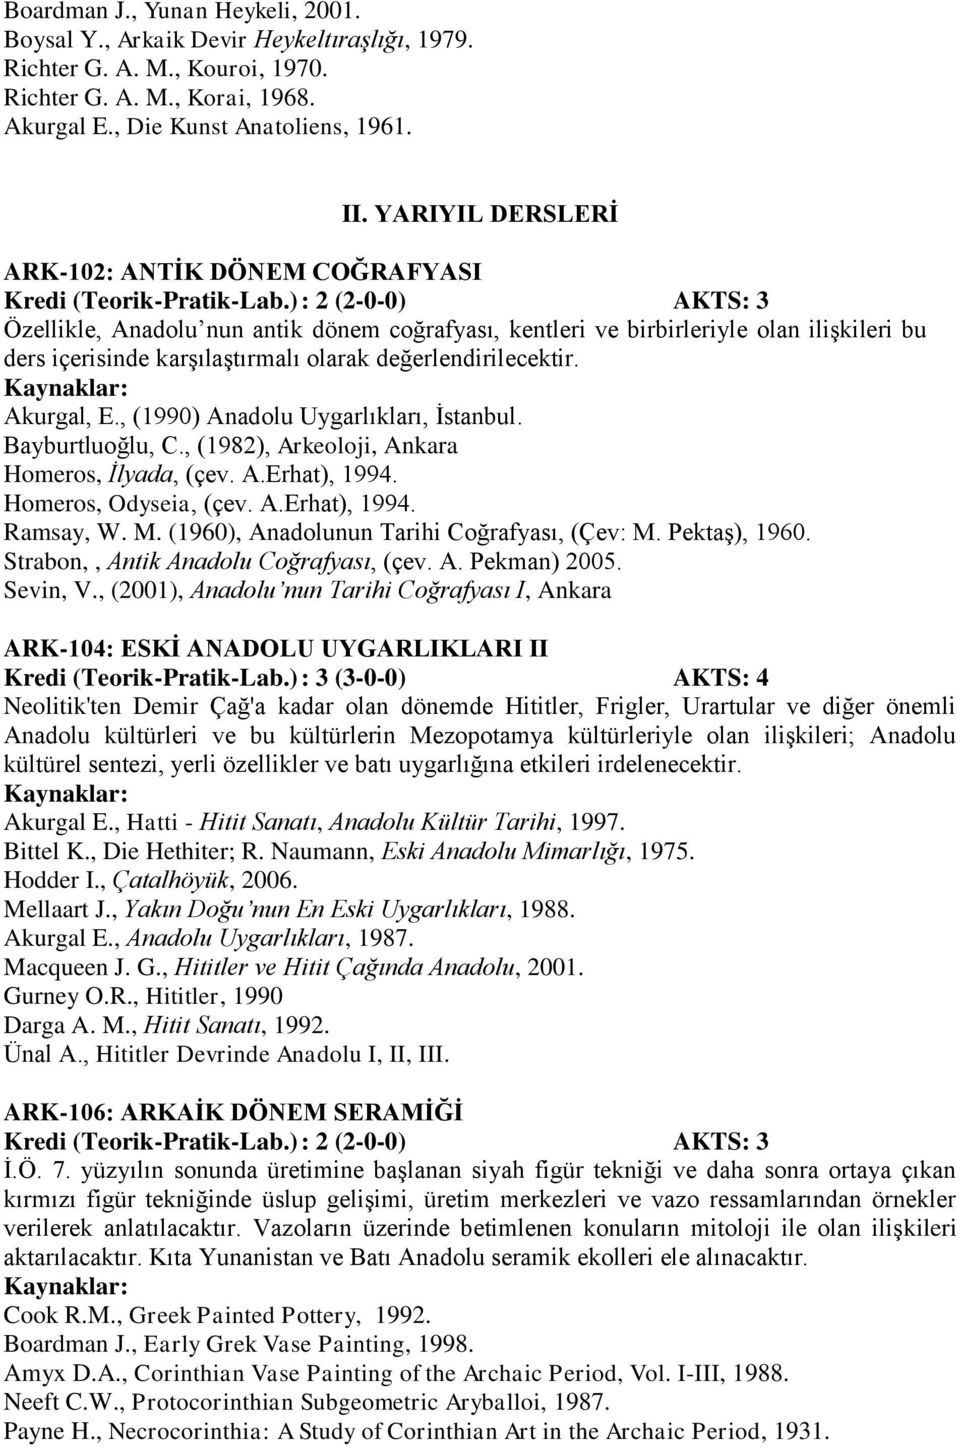 değerlendirilecektir. Akurgal, E., (1990) Anadolu Uygarlıkları, İstanbul. Bayburtluoğlu, C., (1982), Arkeoloji, Ankara Homeros, İlyada, (çev. A.Erhat), 1994. Homeros, Odyseia, (çev. A.Erhat), 1994. Ramsay, W.